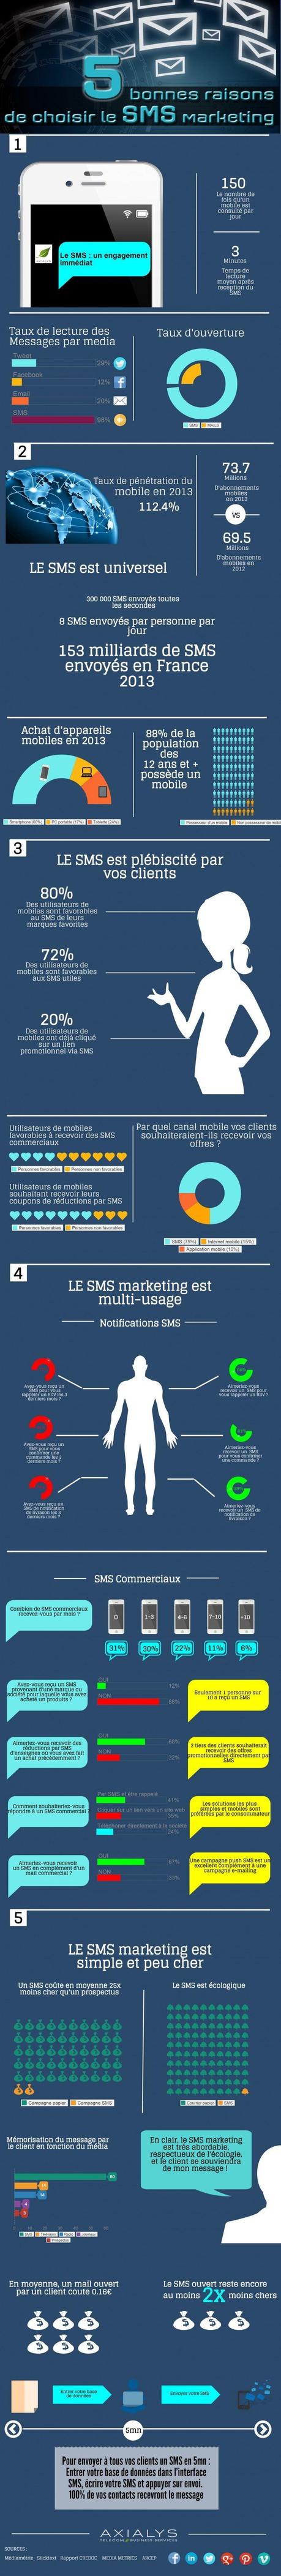 Le SMS dans votre stratégie Marketing